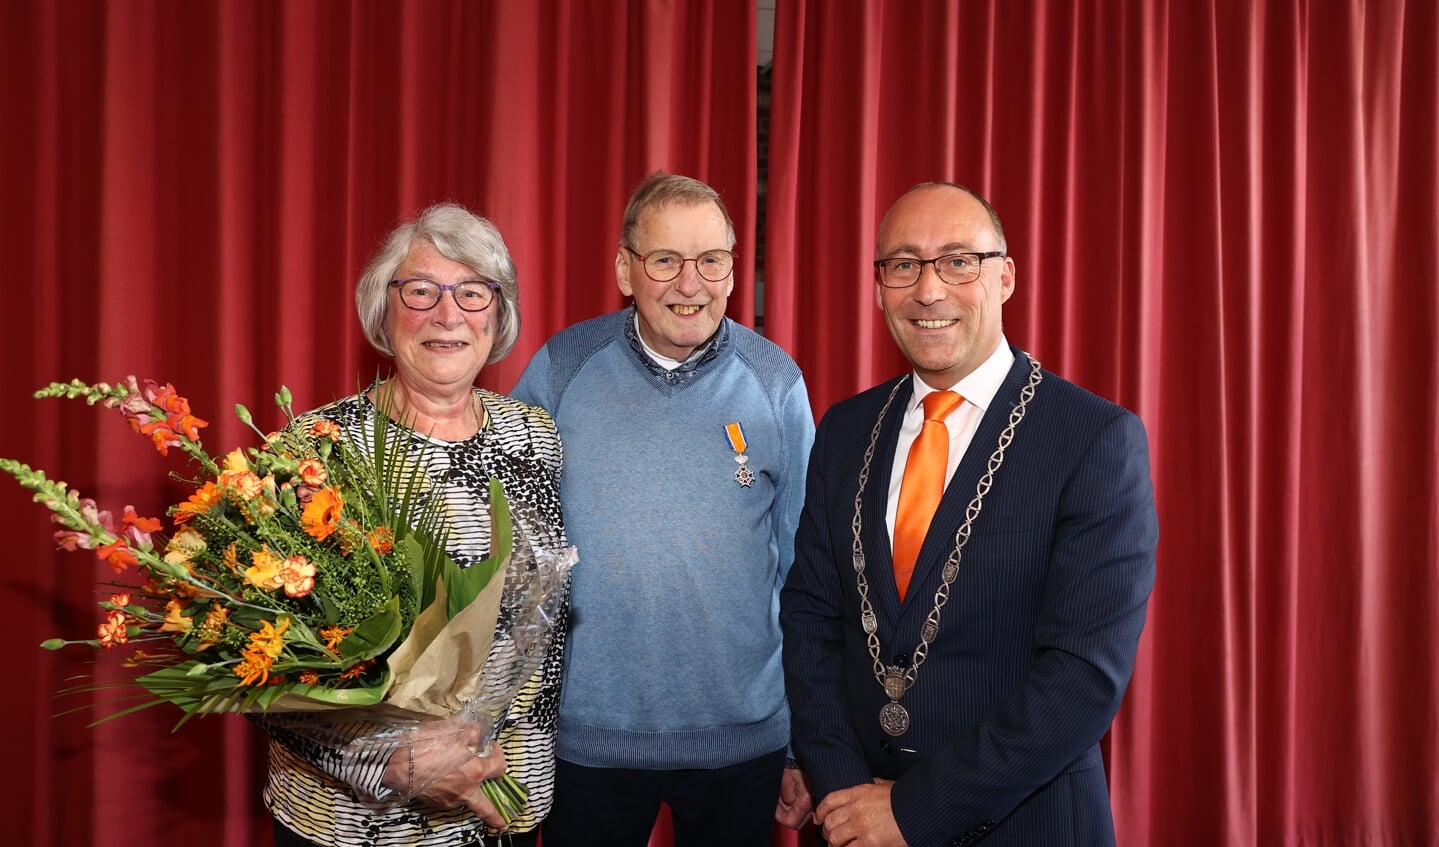 Gerrit Meijers met zijn vrouw en burgemeester Hiemstra. (foto: gemeente Aa en Hunze/Herman van Oost)